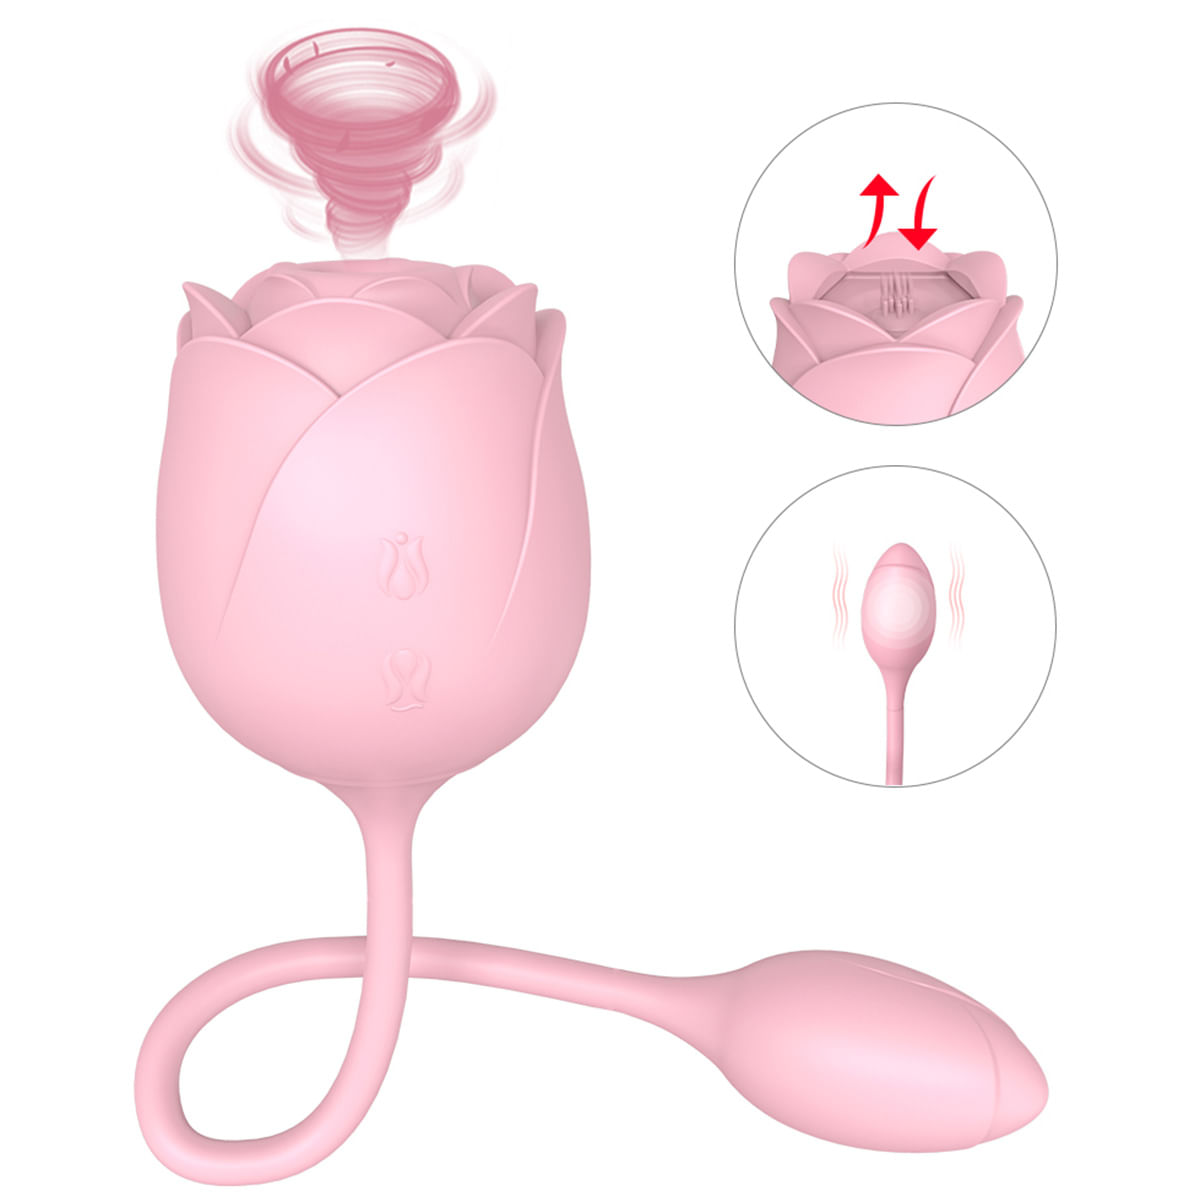 S-Hande Immortal Flower Vibrador em Formato de Rosa com 9 Funções de Vibração e Pulsação Sexy Import